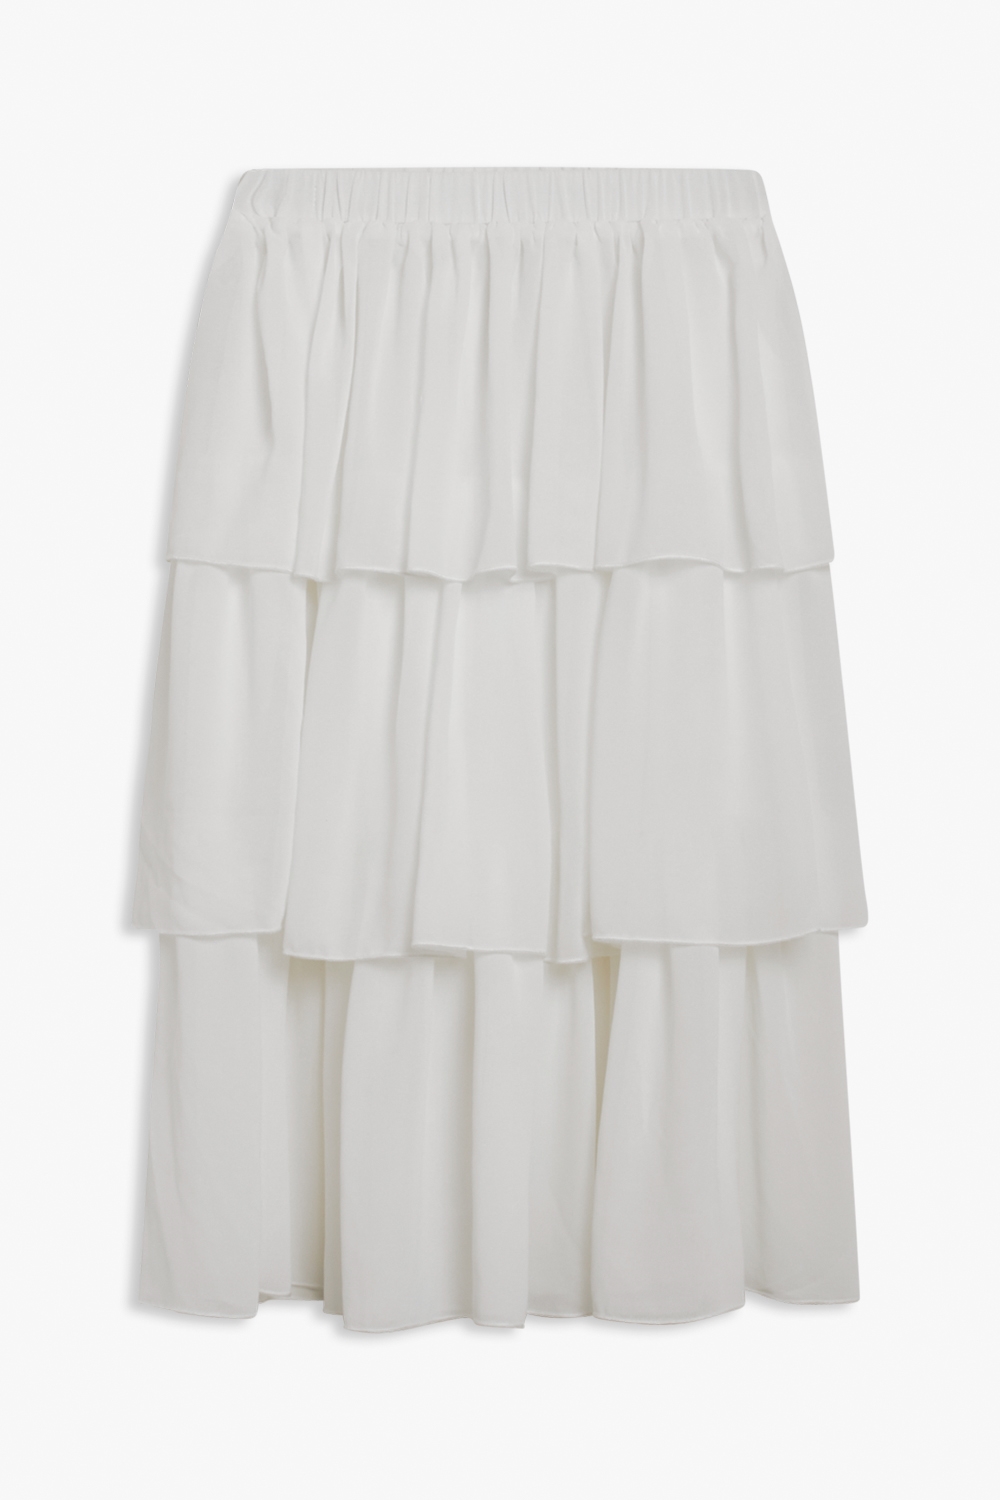 Aten Skirt white